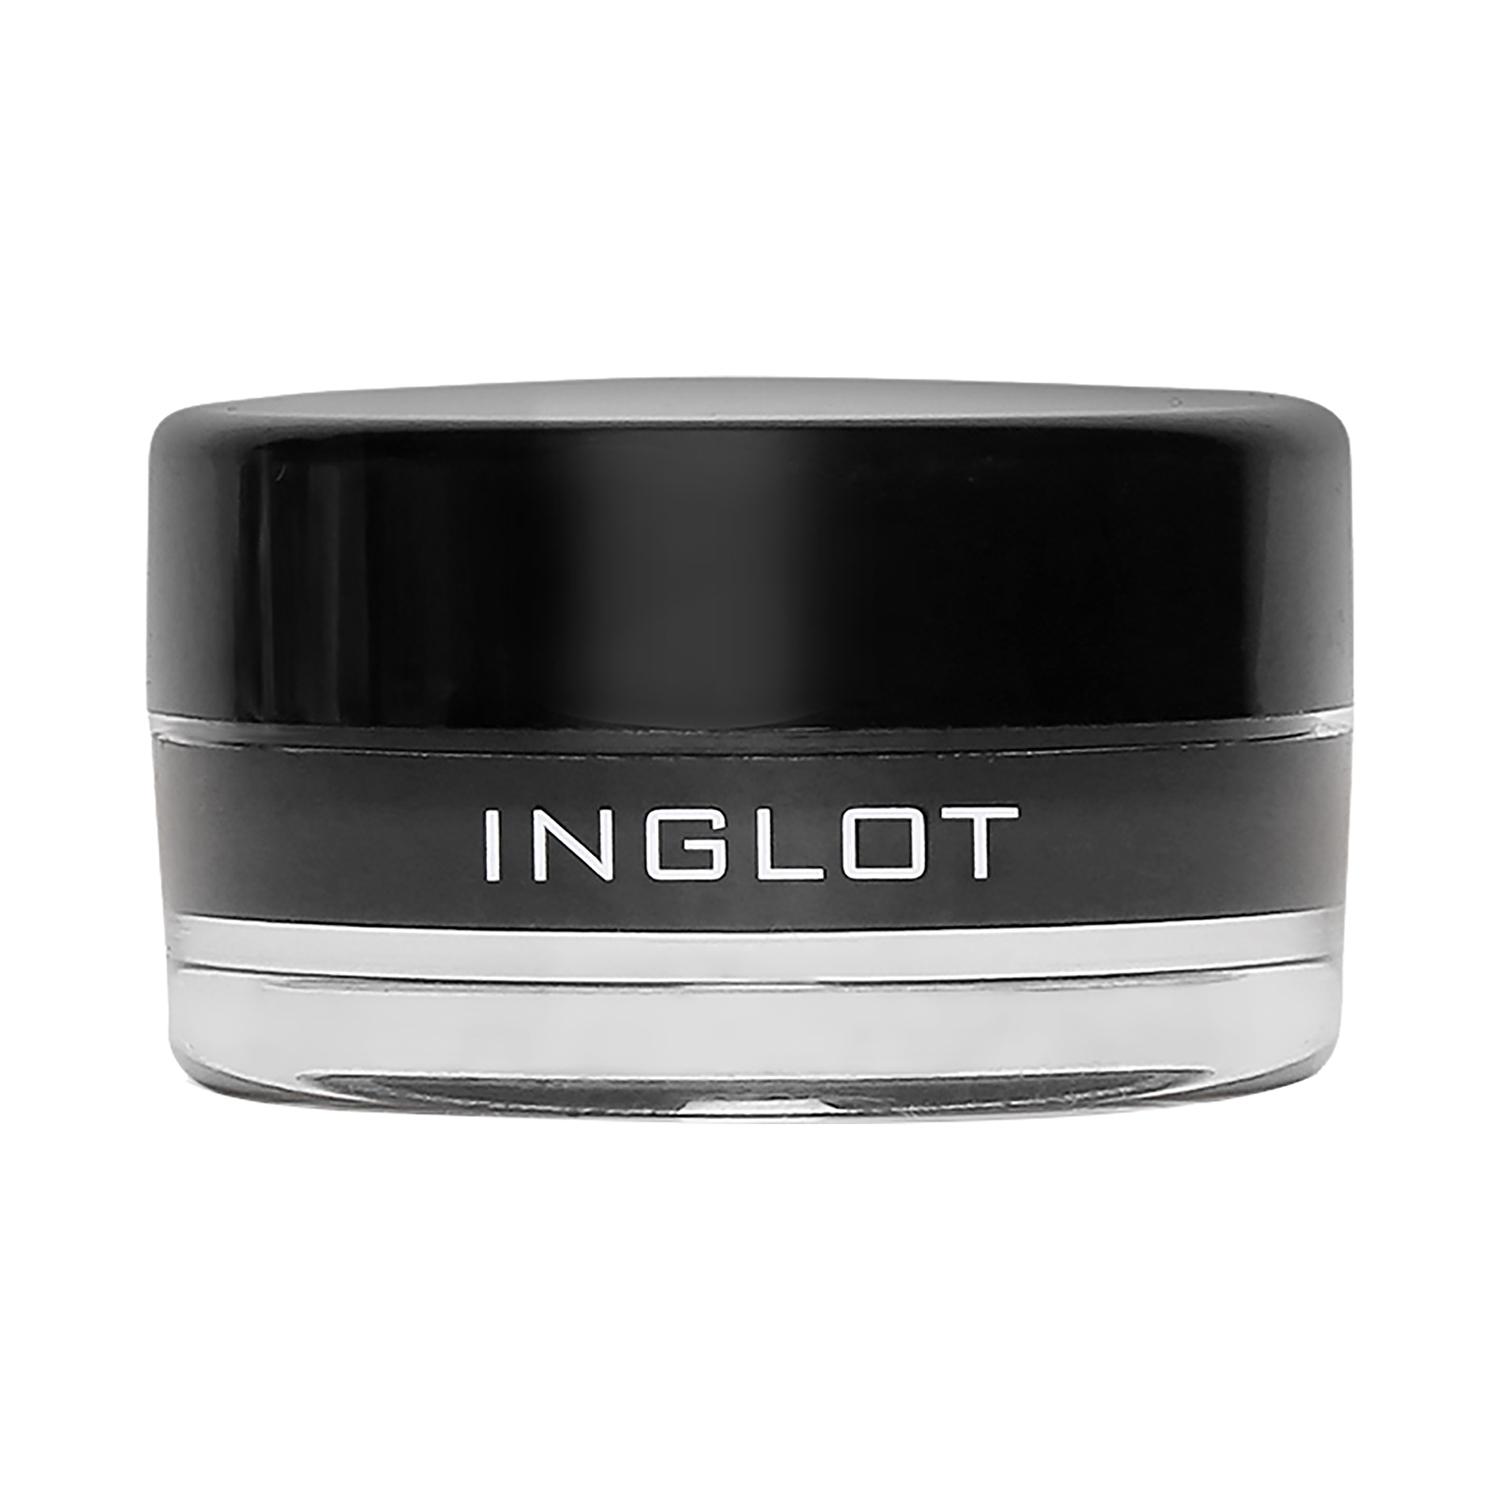 inglot amc eyeliner gel - 77 (5.5g)